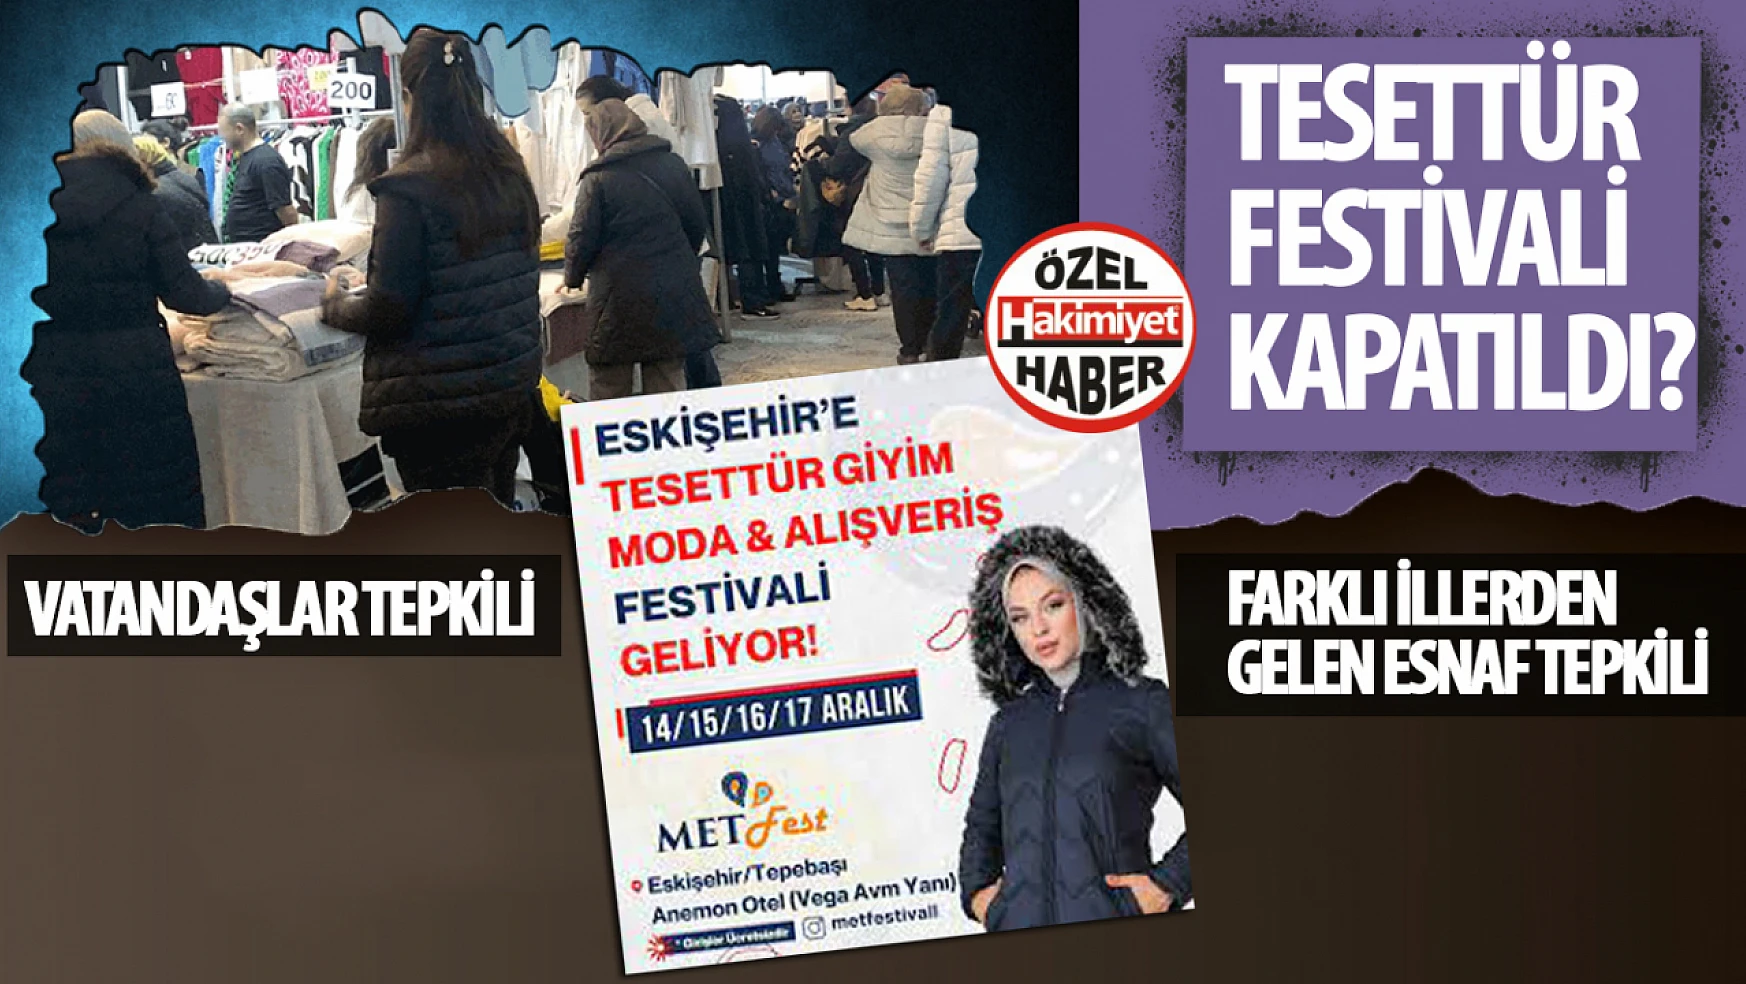 Eskişehir'deki Tesettür Festivali 'Haksız Rekabet' Öne Sürülerek Kapatıldı